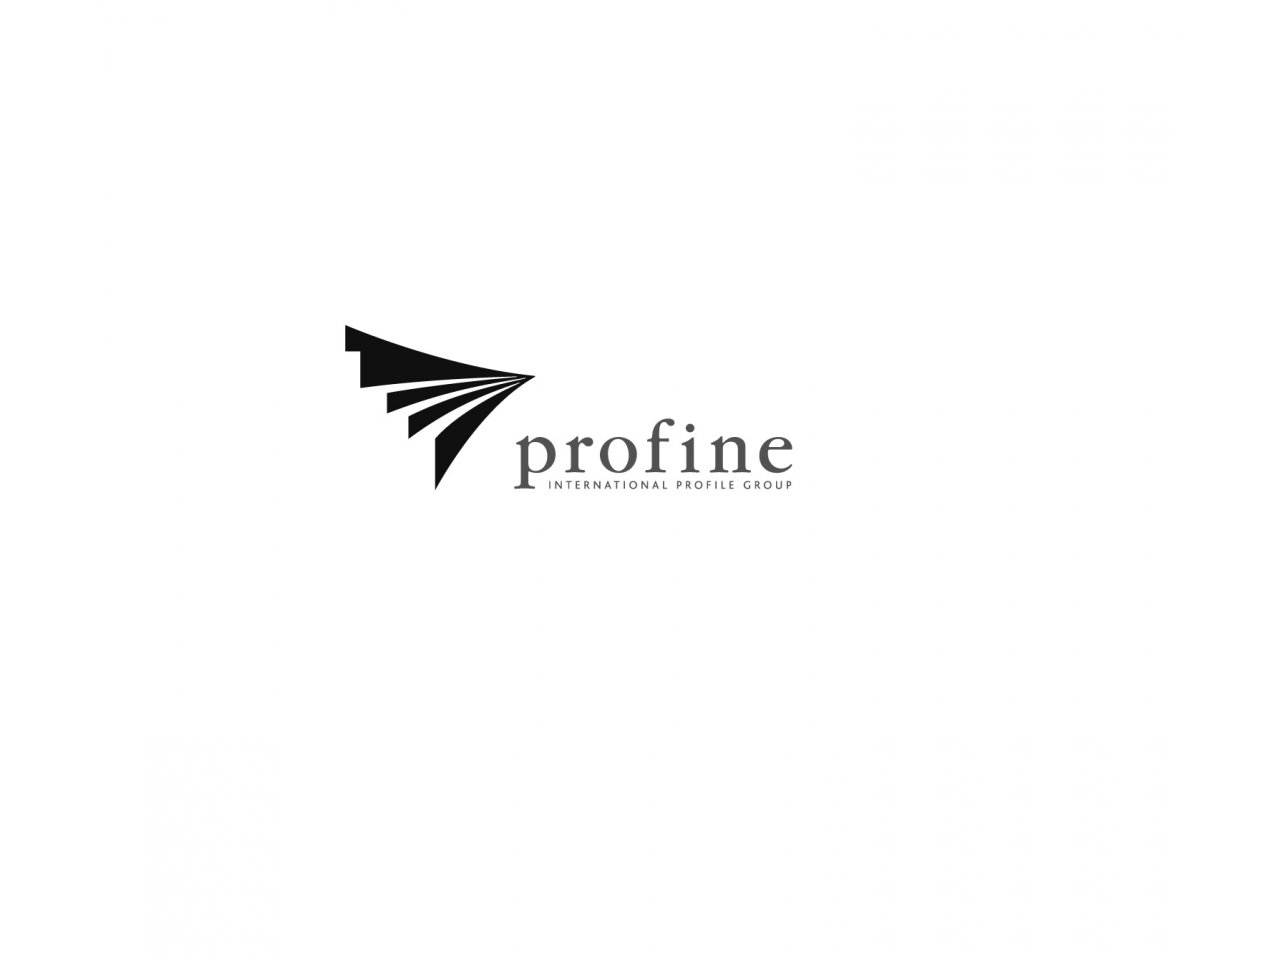  profine Group         